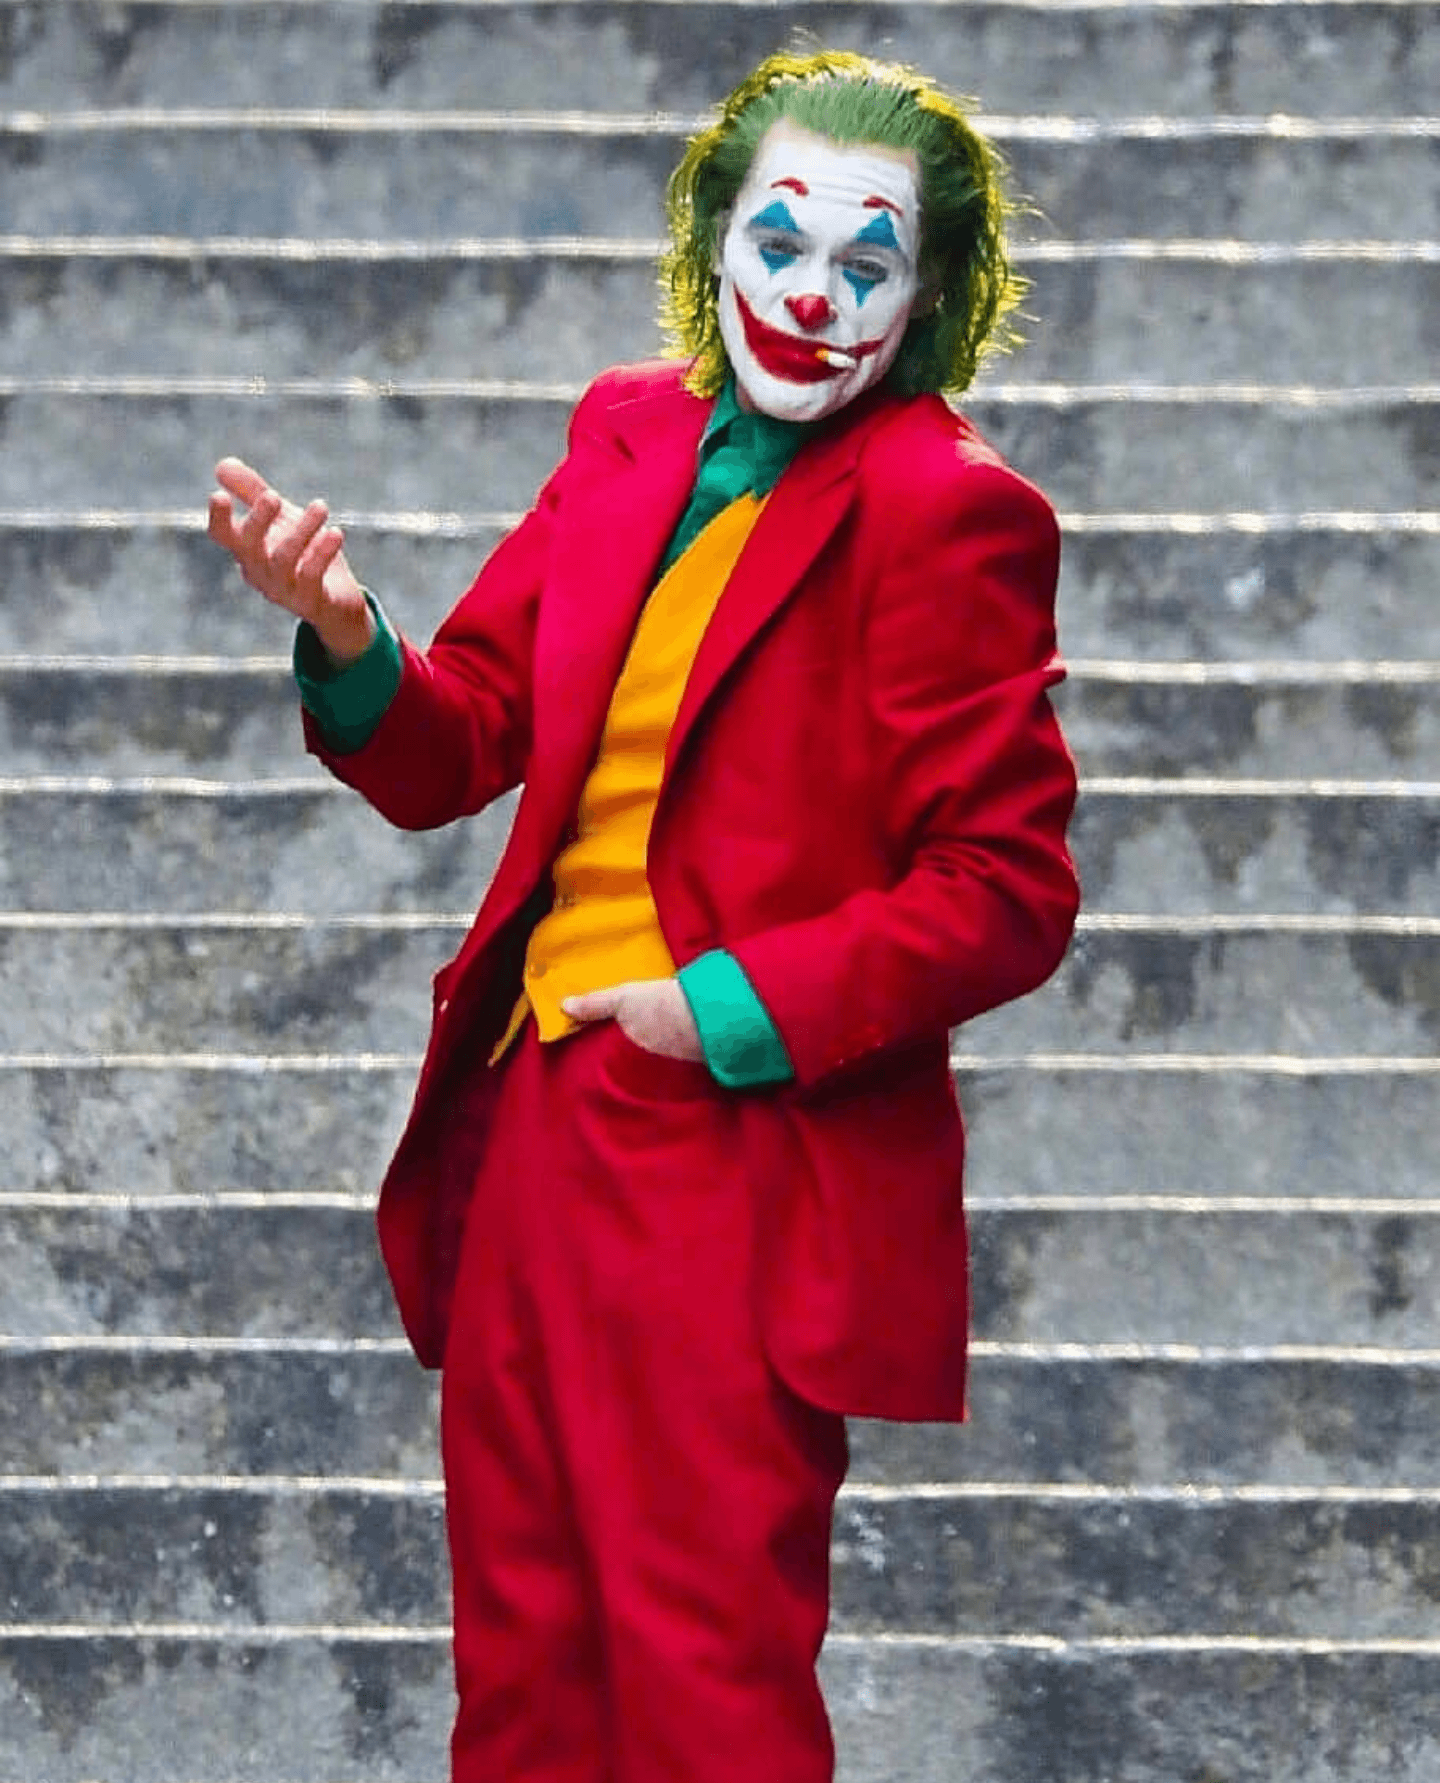 Joaquin Phoenix Joker Wallpaper